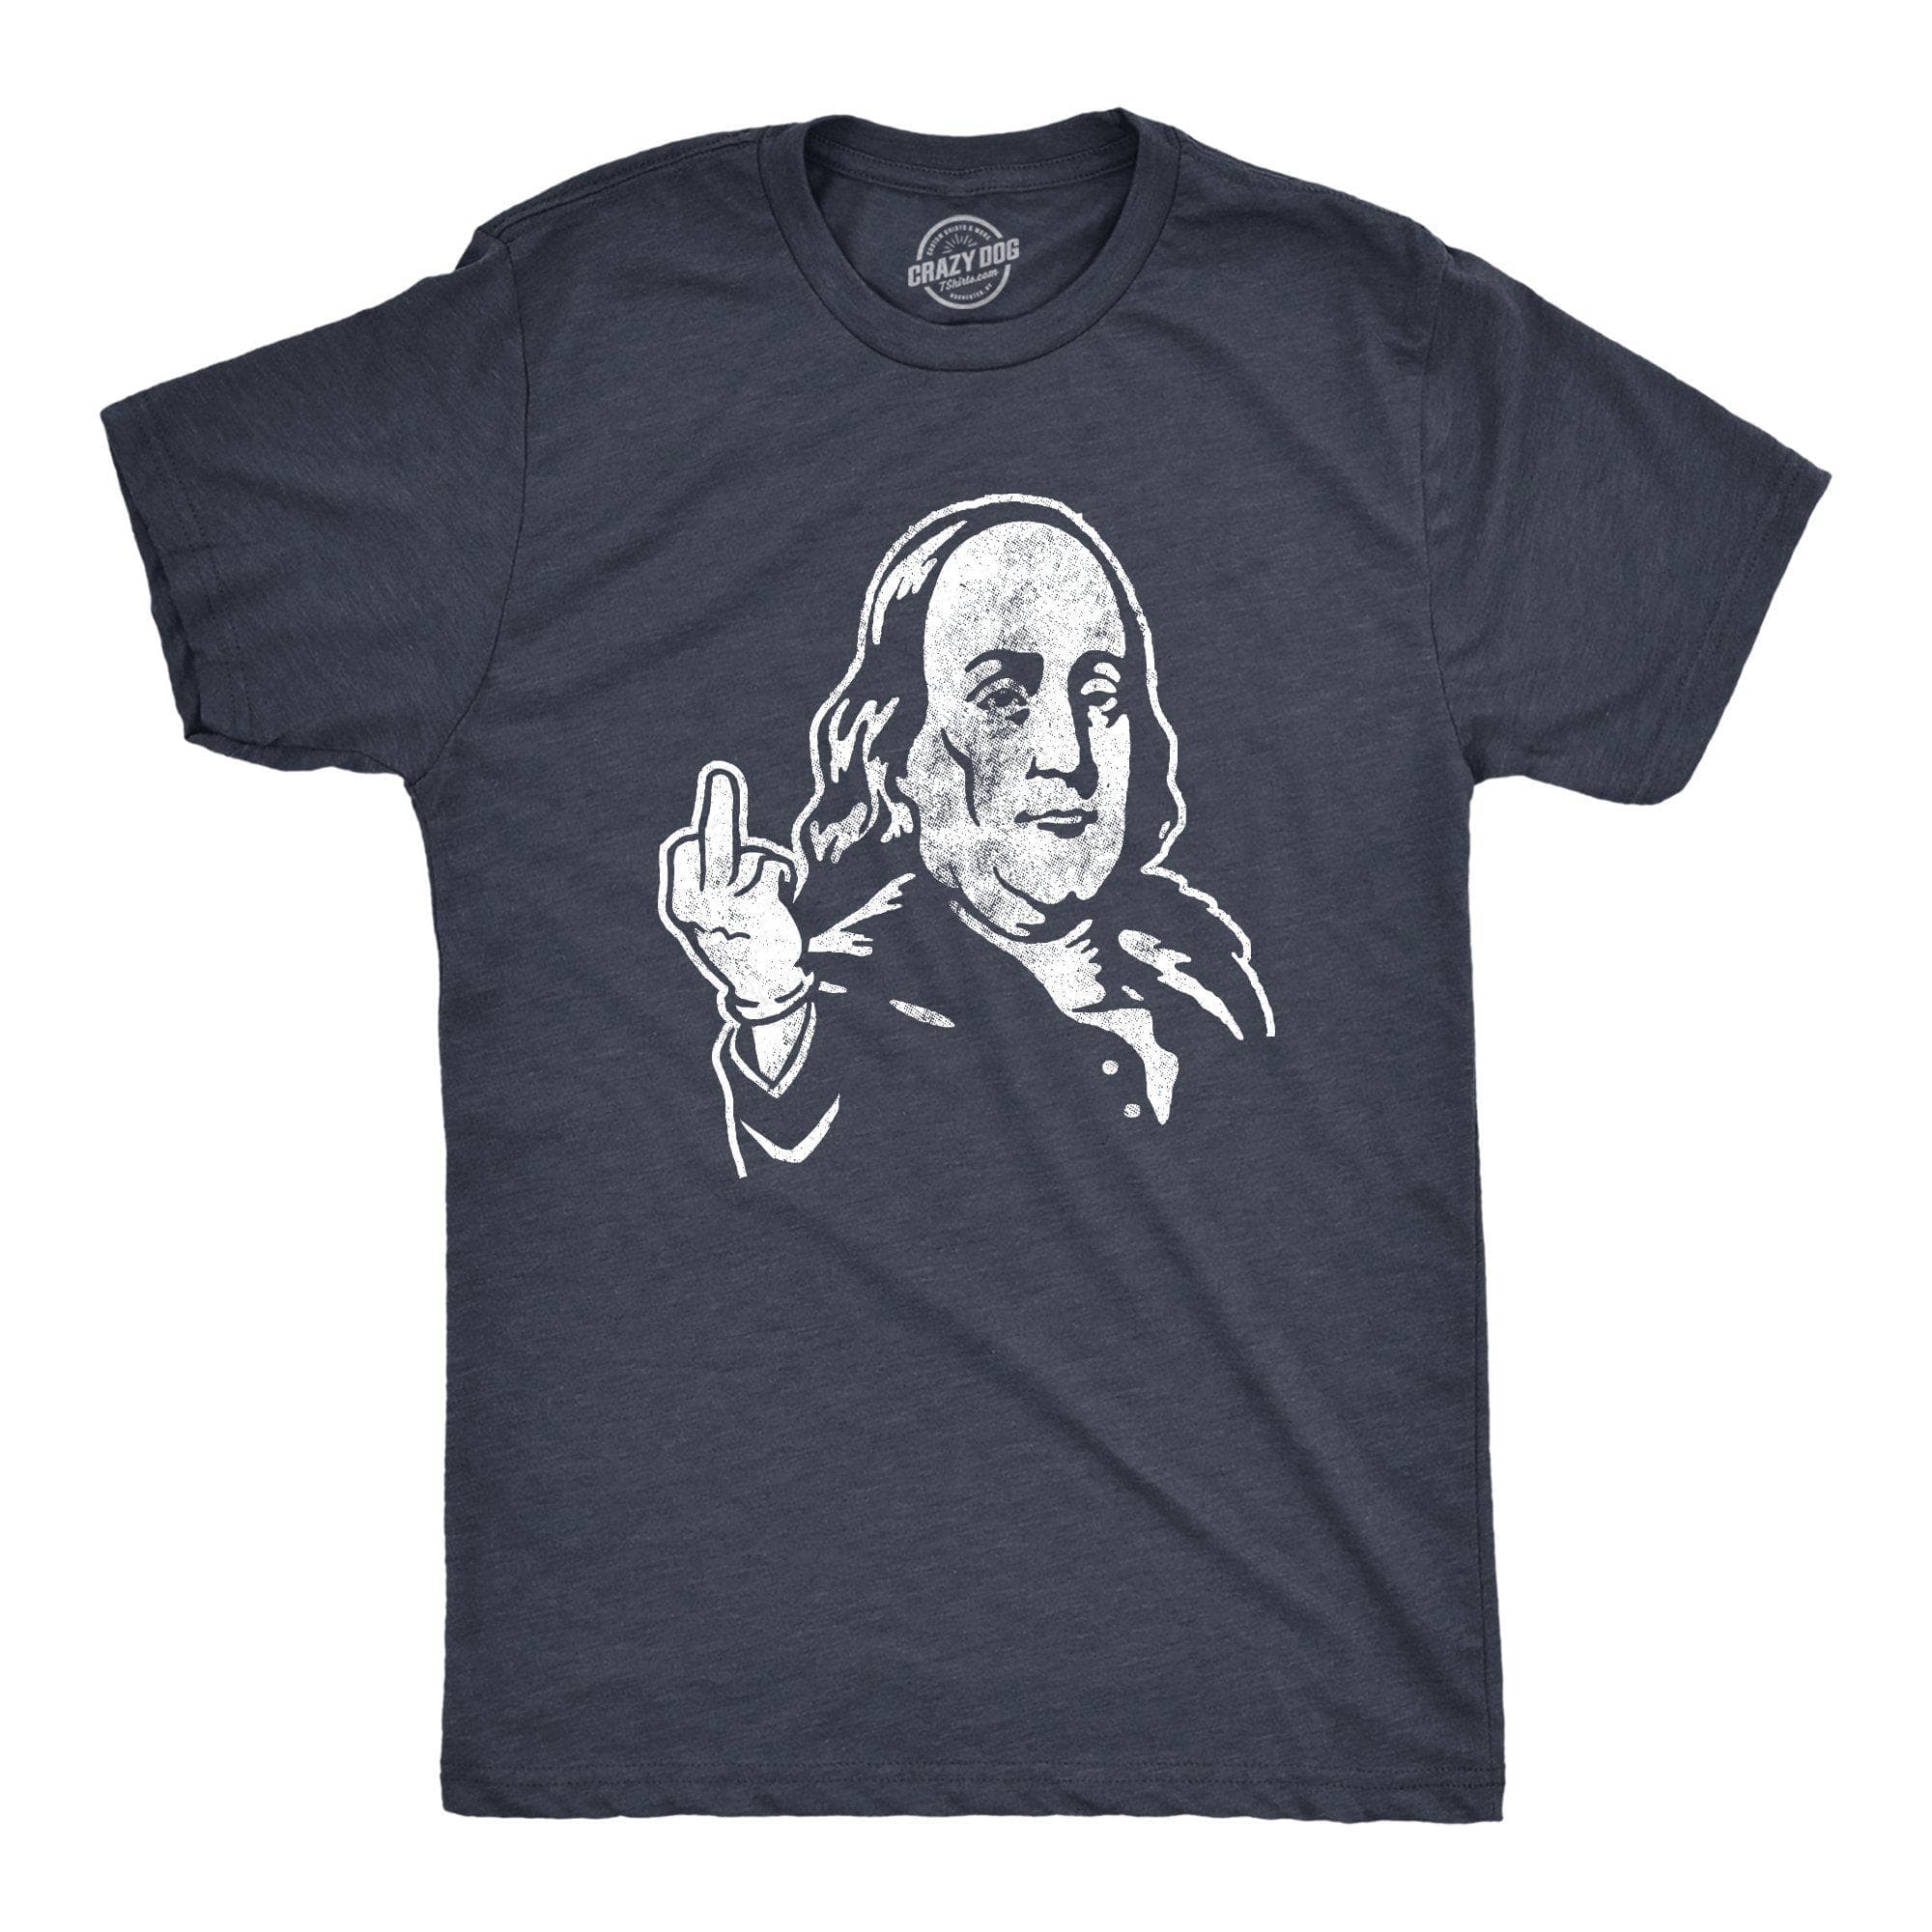 Benjamin Franklin Middle Finger Men's Tshirt - Crazy Dog T-Shirts